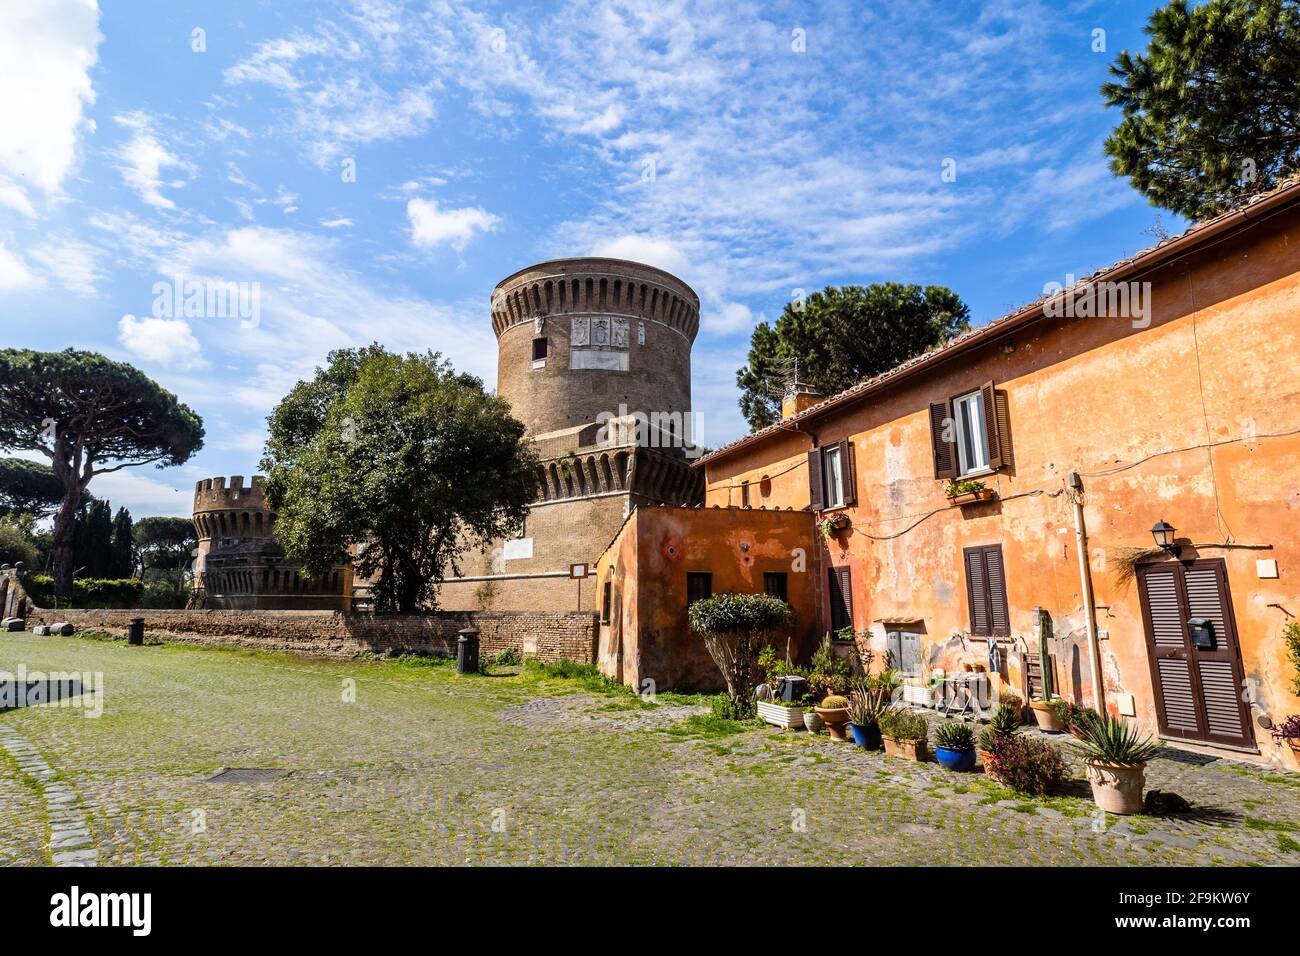 Castello di Giulio II in Ostia Antica - Rome, Italy Stock Photo